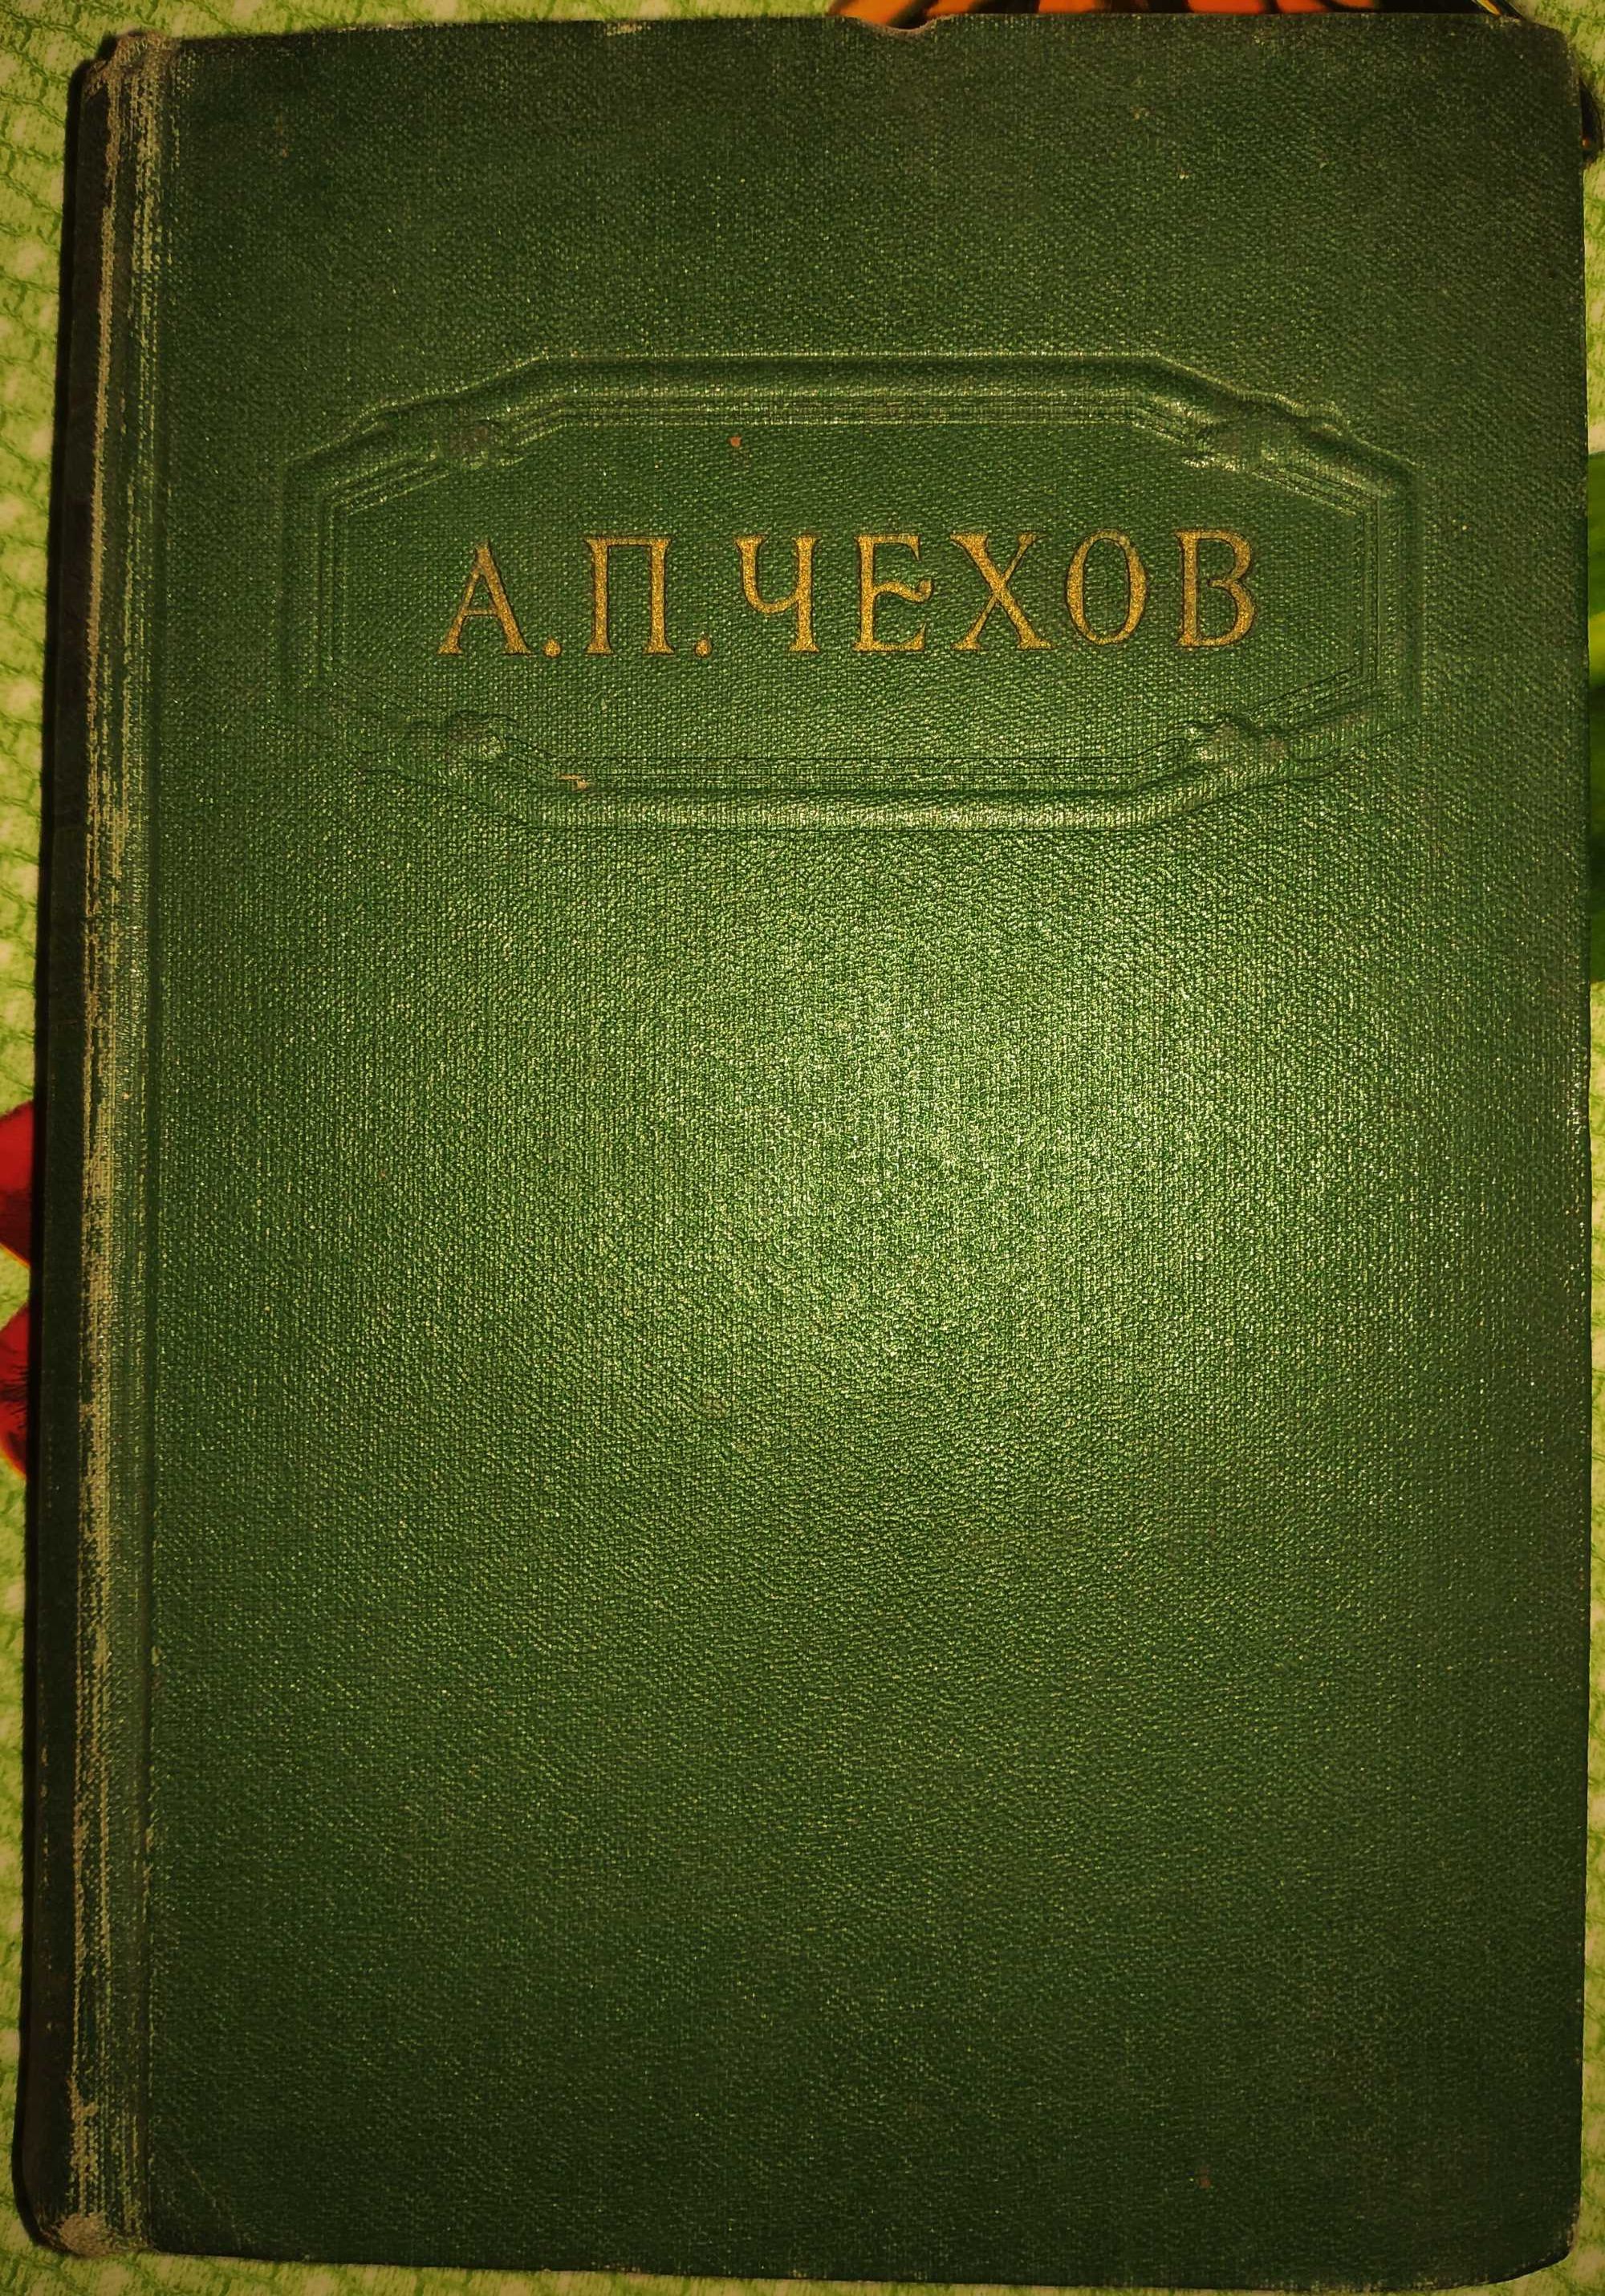 1954 г. Чехов. "Собрание сочинений в 12 томах". Тома 1, 2, 4, 6 - 8.